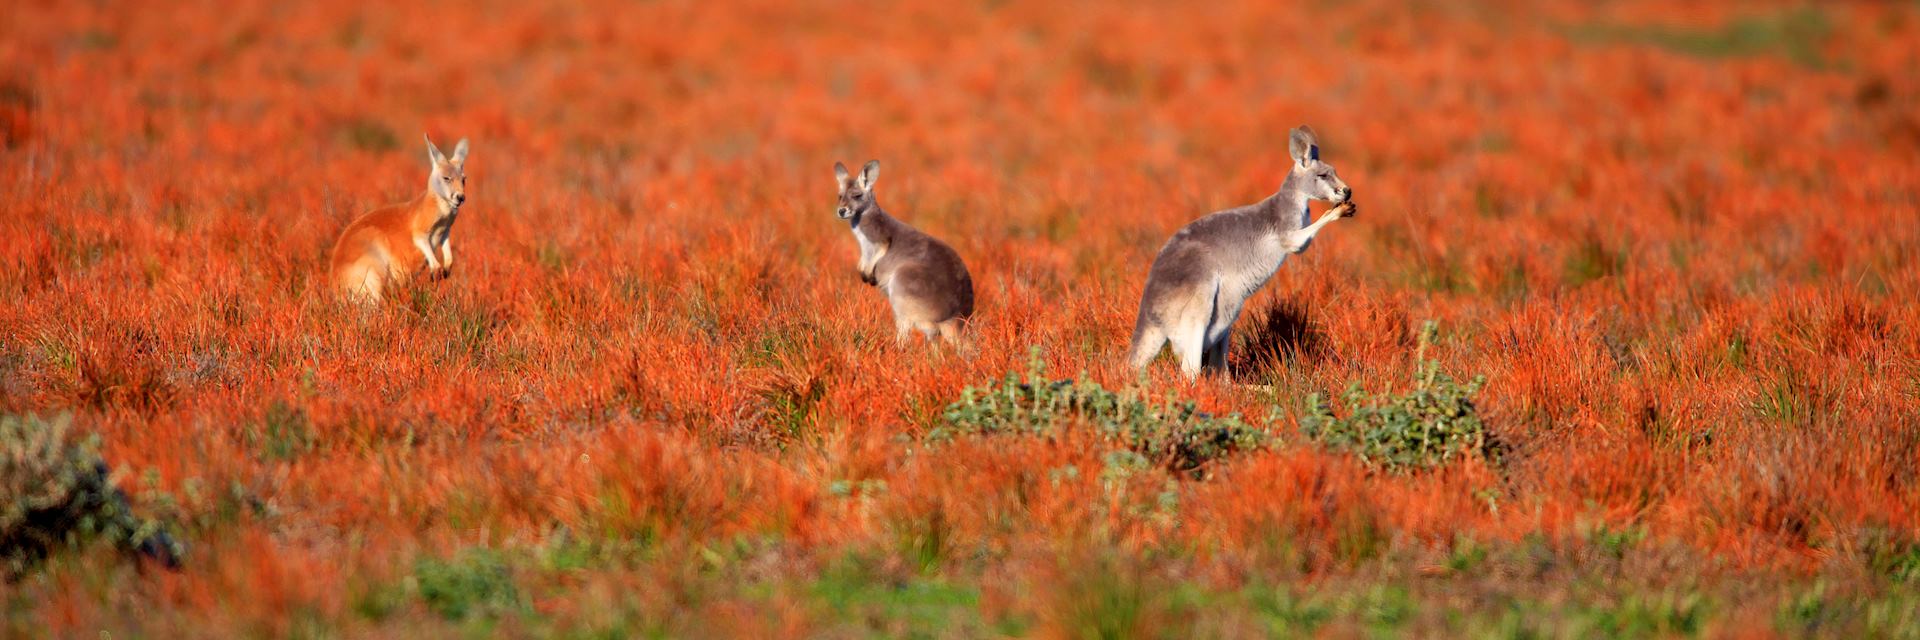 Kangaroos in the Flinders Ranges, South Australia